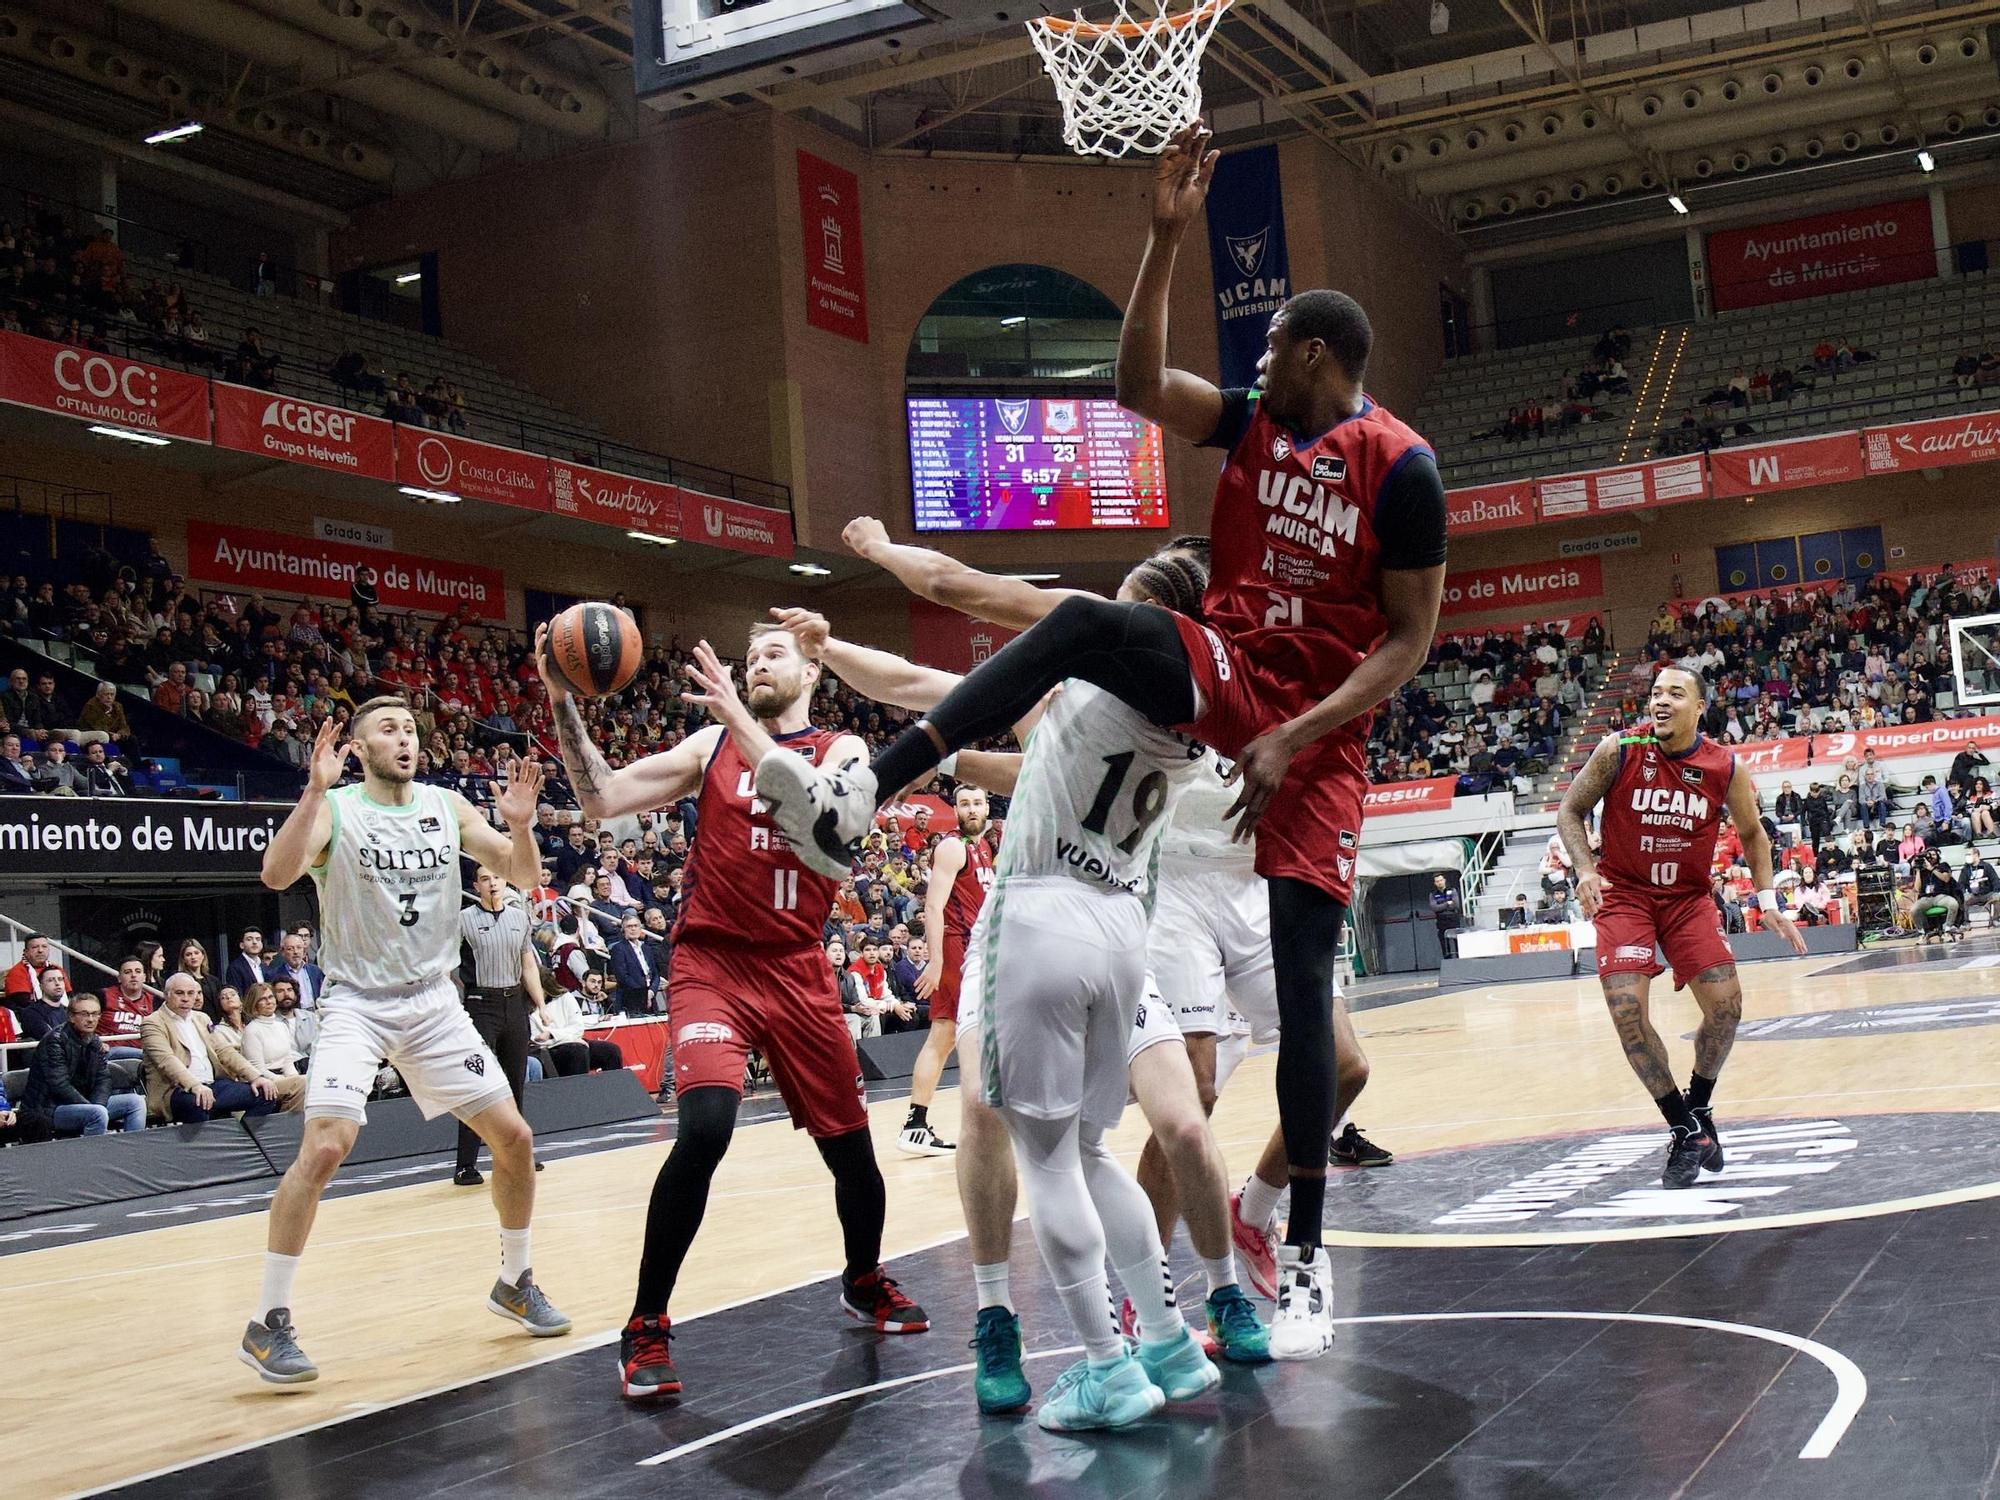 UCAM Murcia - Surne Bilbao Basket en imágenes